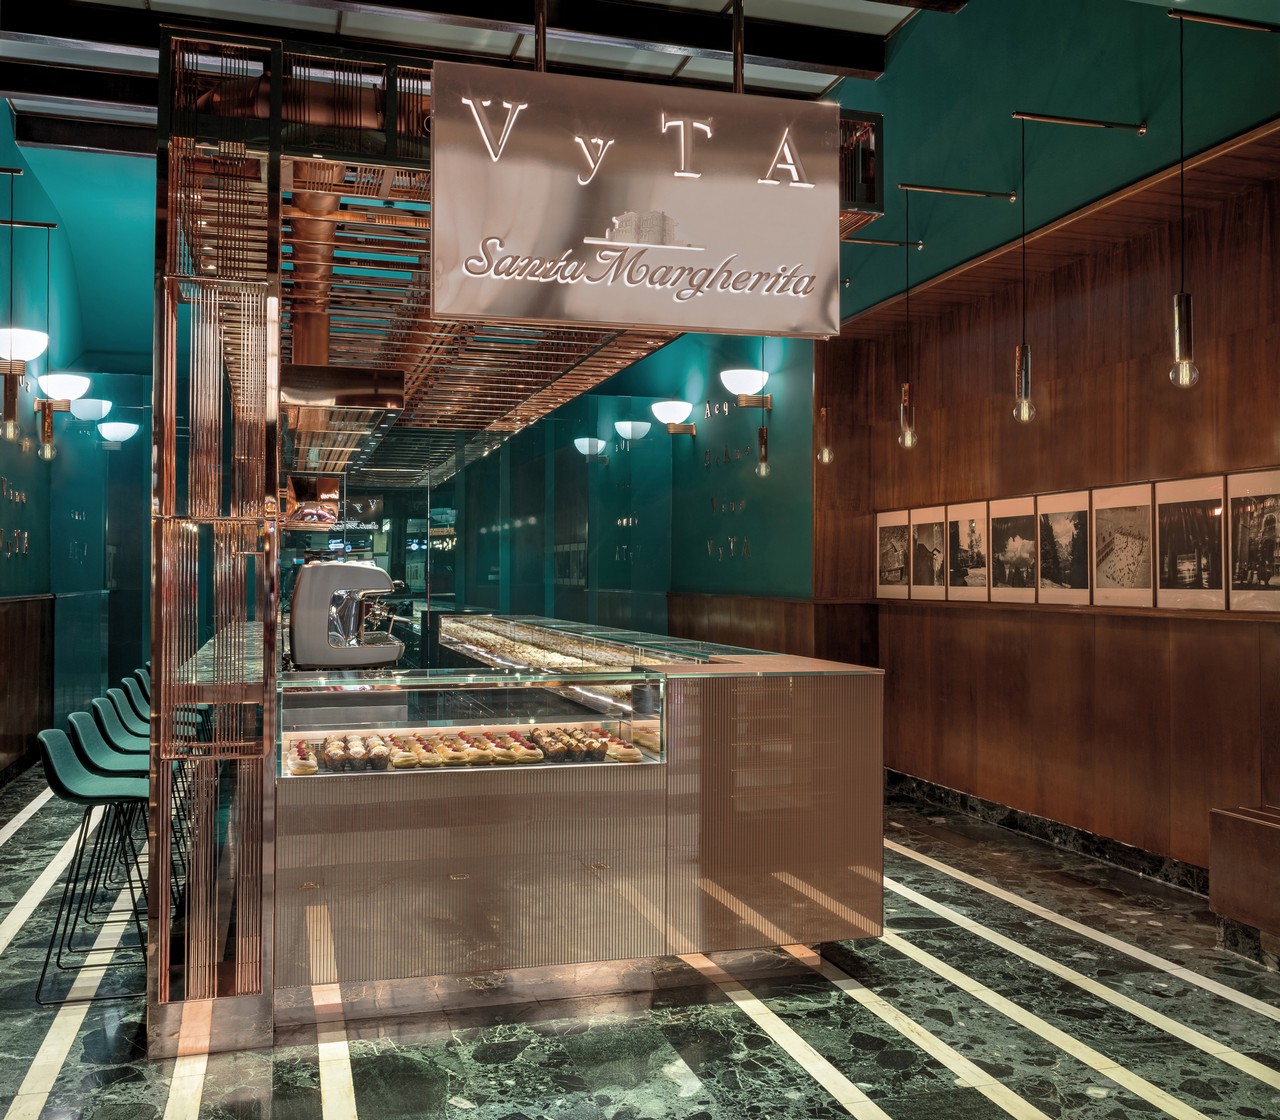 Firenze Stazione: lo sgabello di Lapalma alla luxury bakery Vyta Santa Margherita, le foto